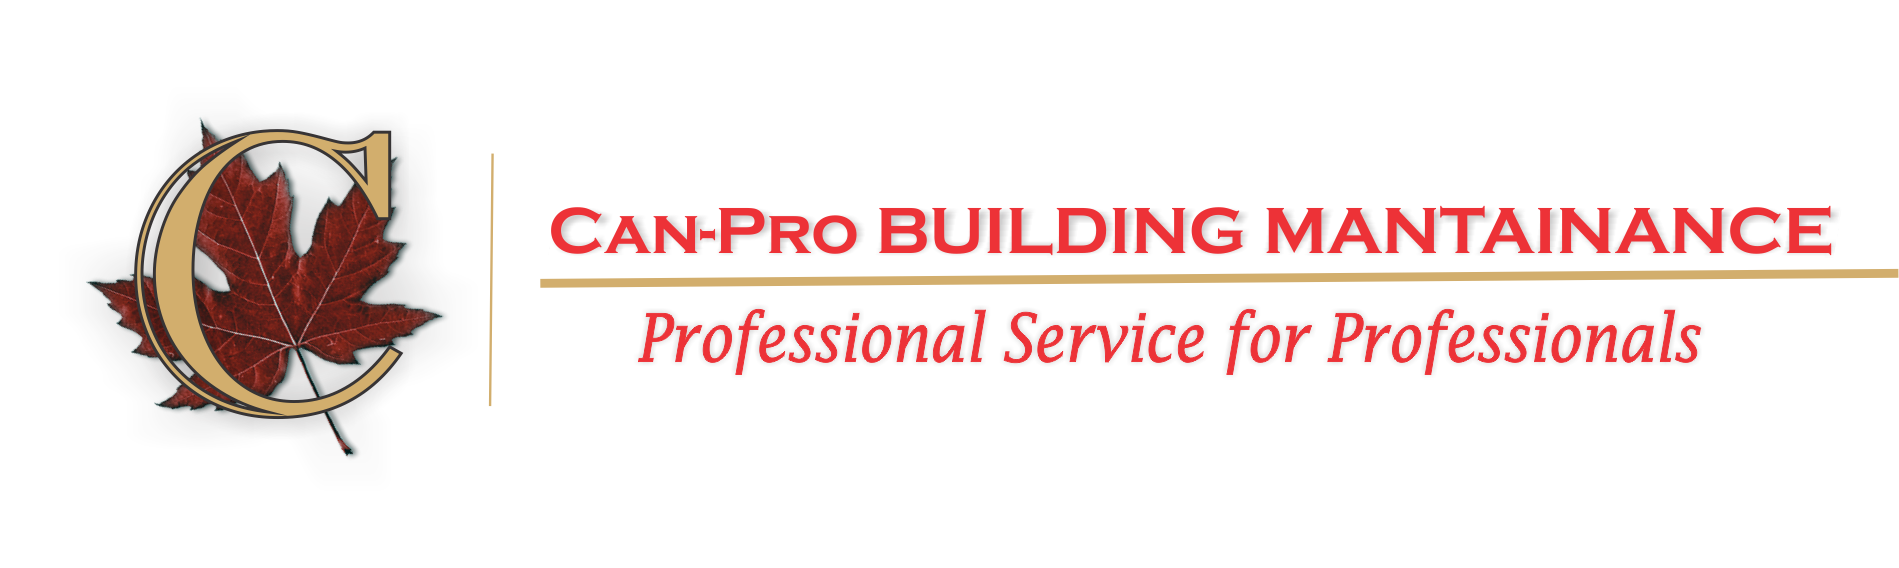 CanPro Building Maintenance